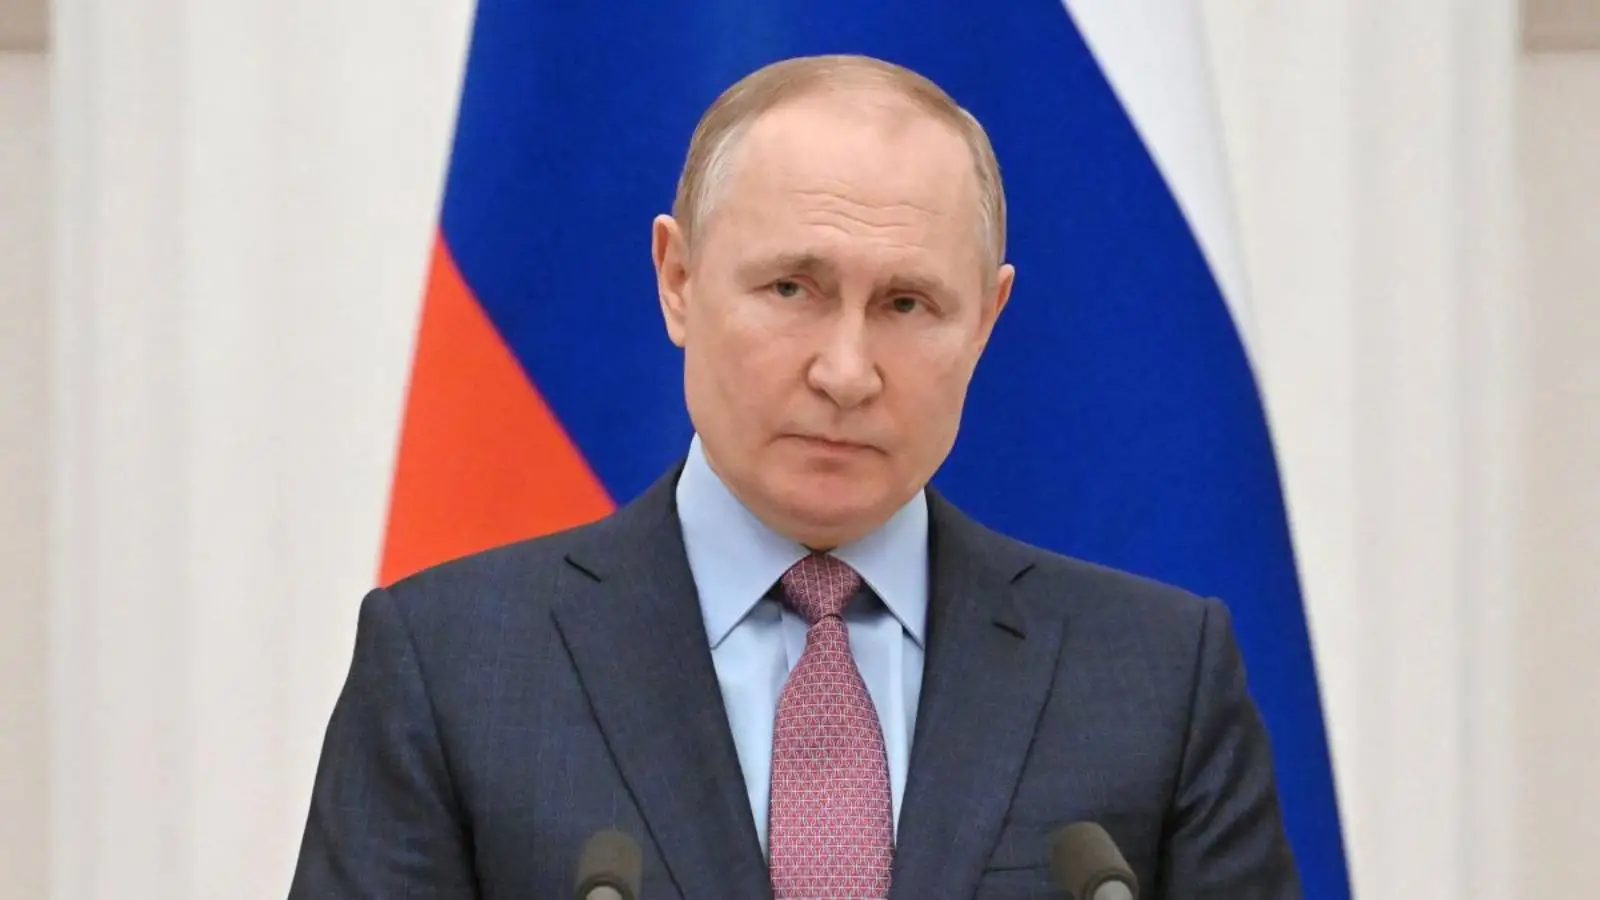 Cati Oameni a Mobilizat Rusia in de la Anuntul lui Putin care a Speriat Rusii